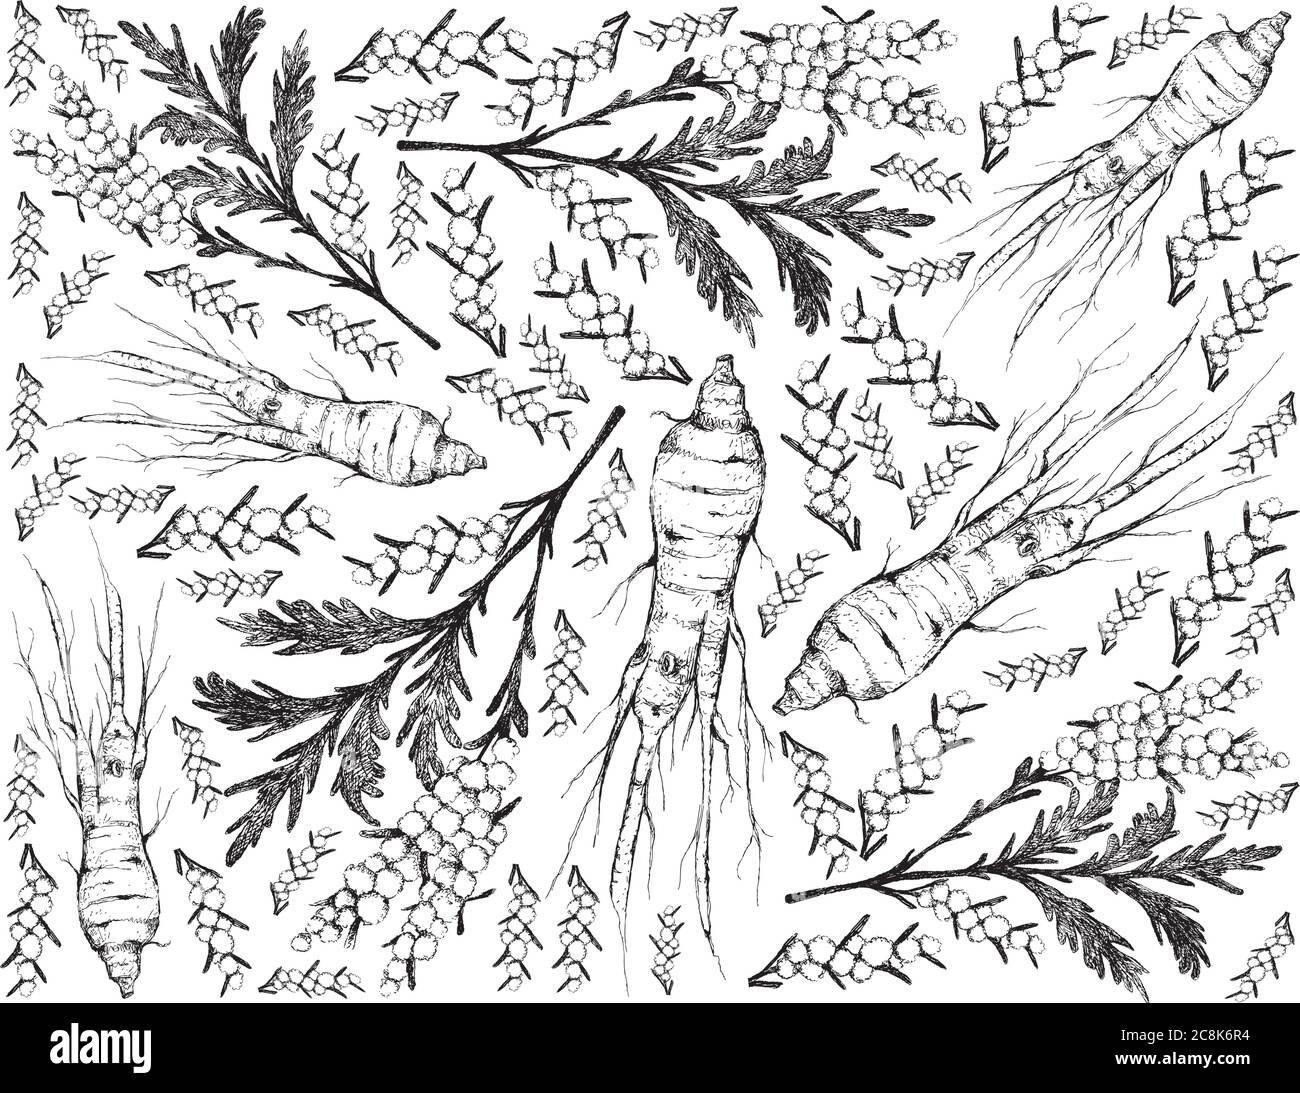 Kräuterblume und Pflanze, handgezeichnete Illustration von Artemisia Absinthium oder Wermut Pflanzen und Ginseng Wurzel für die traditionelle Medizin verwendet. Stock Vektor